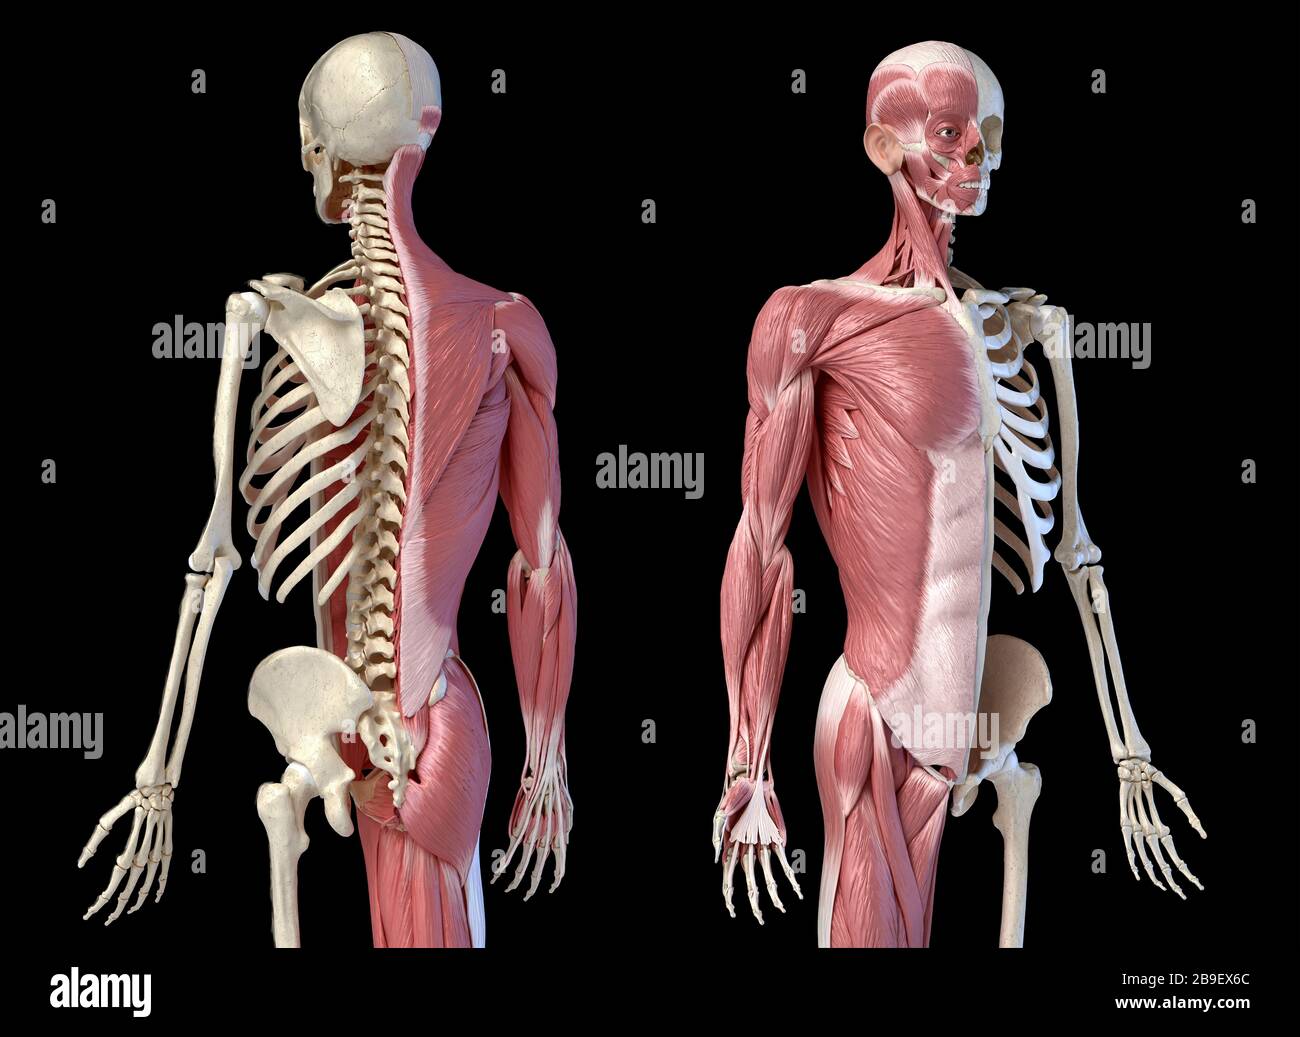 Oberkörper männliche Anatomie von Muskel- und Skelettsystemen, schwarzer Hintergrund. Stockfoto